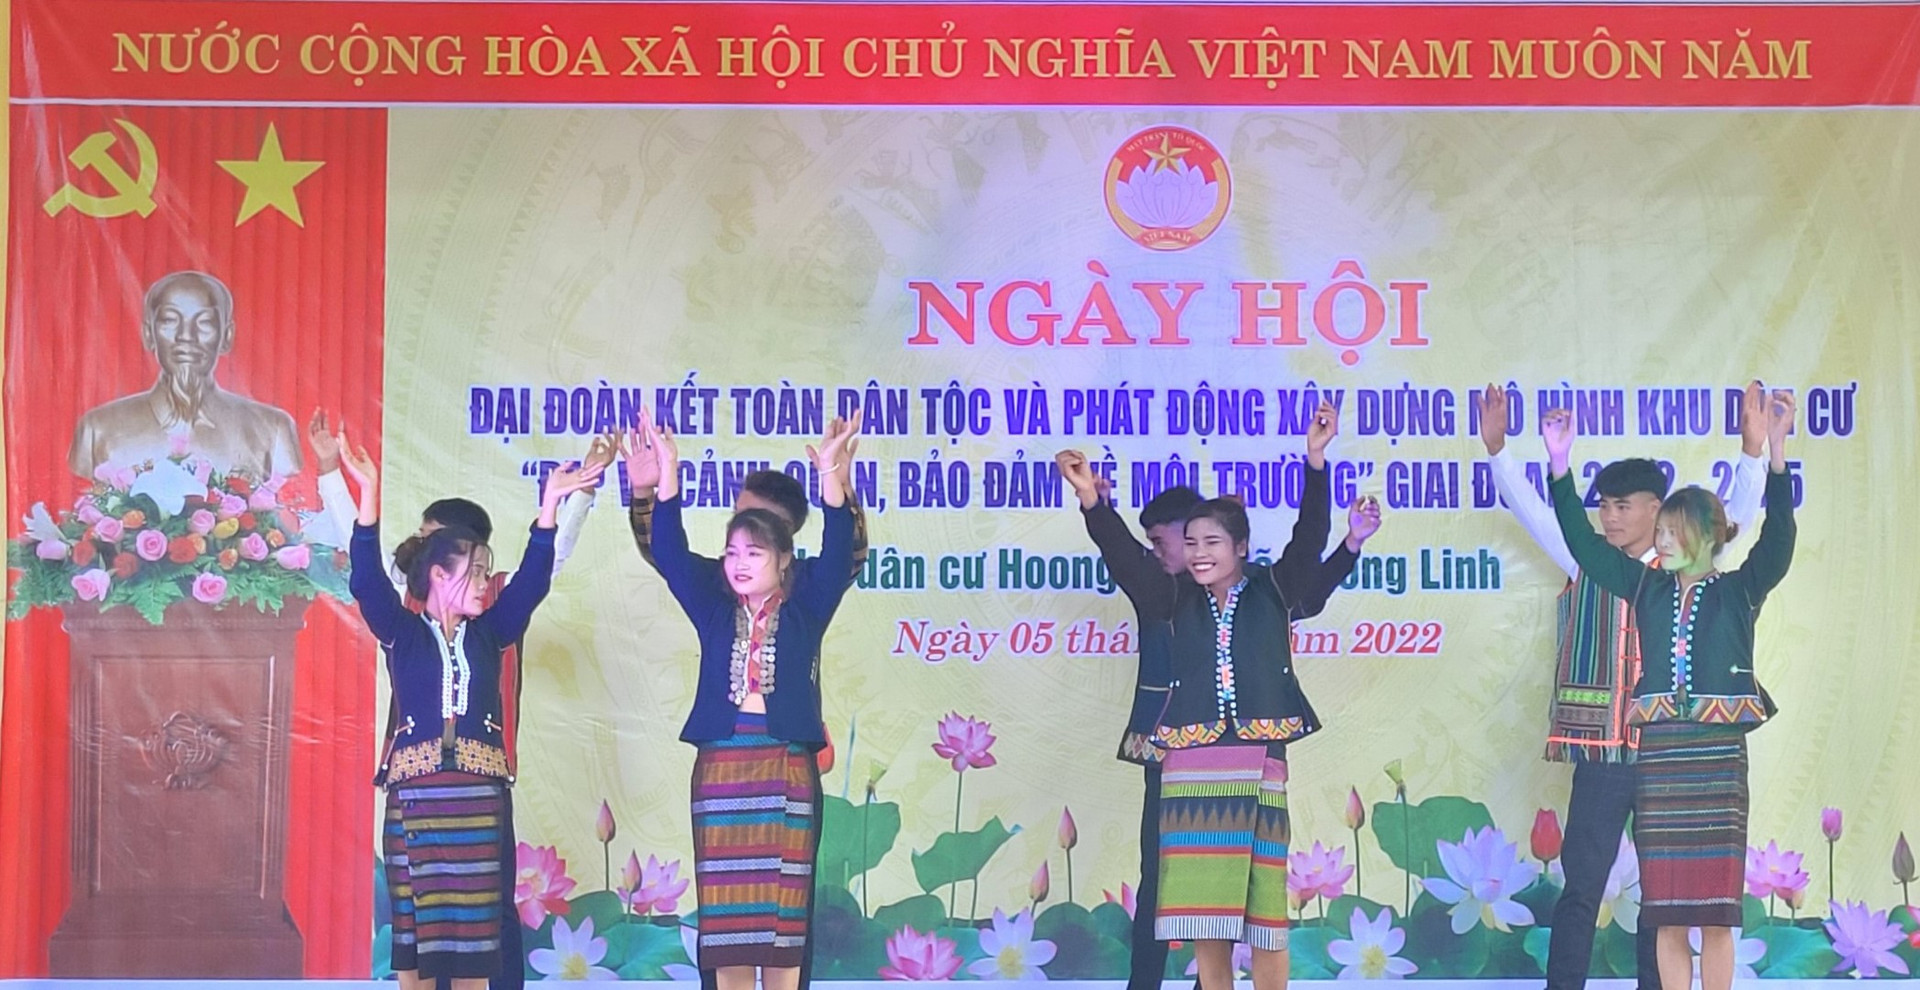 Những nam thanh, nữ tú đồng bào dân tộc Bru - Vân Kiều biểu diễn văn nghệ chào mừng Ngày hội.